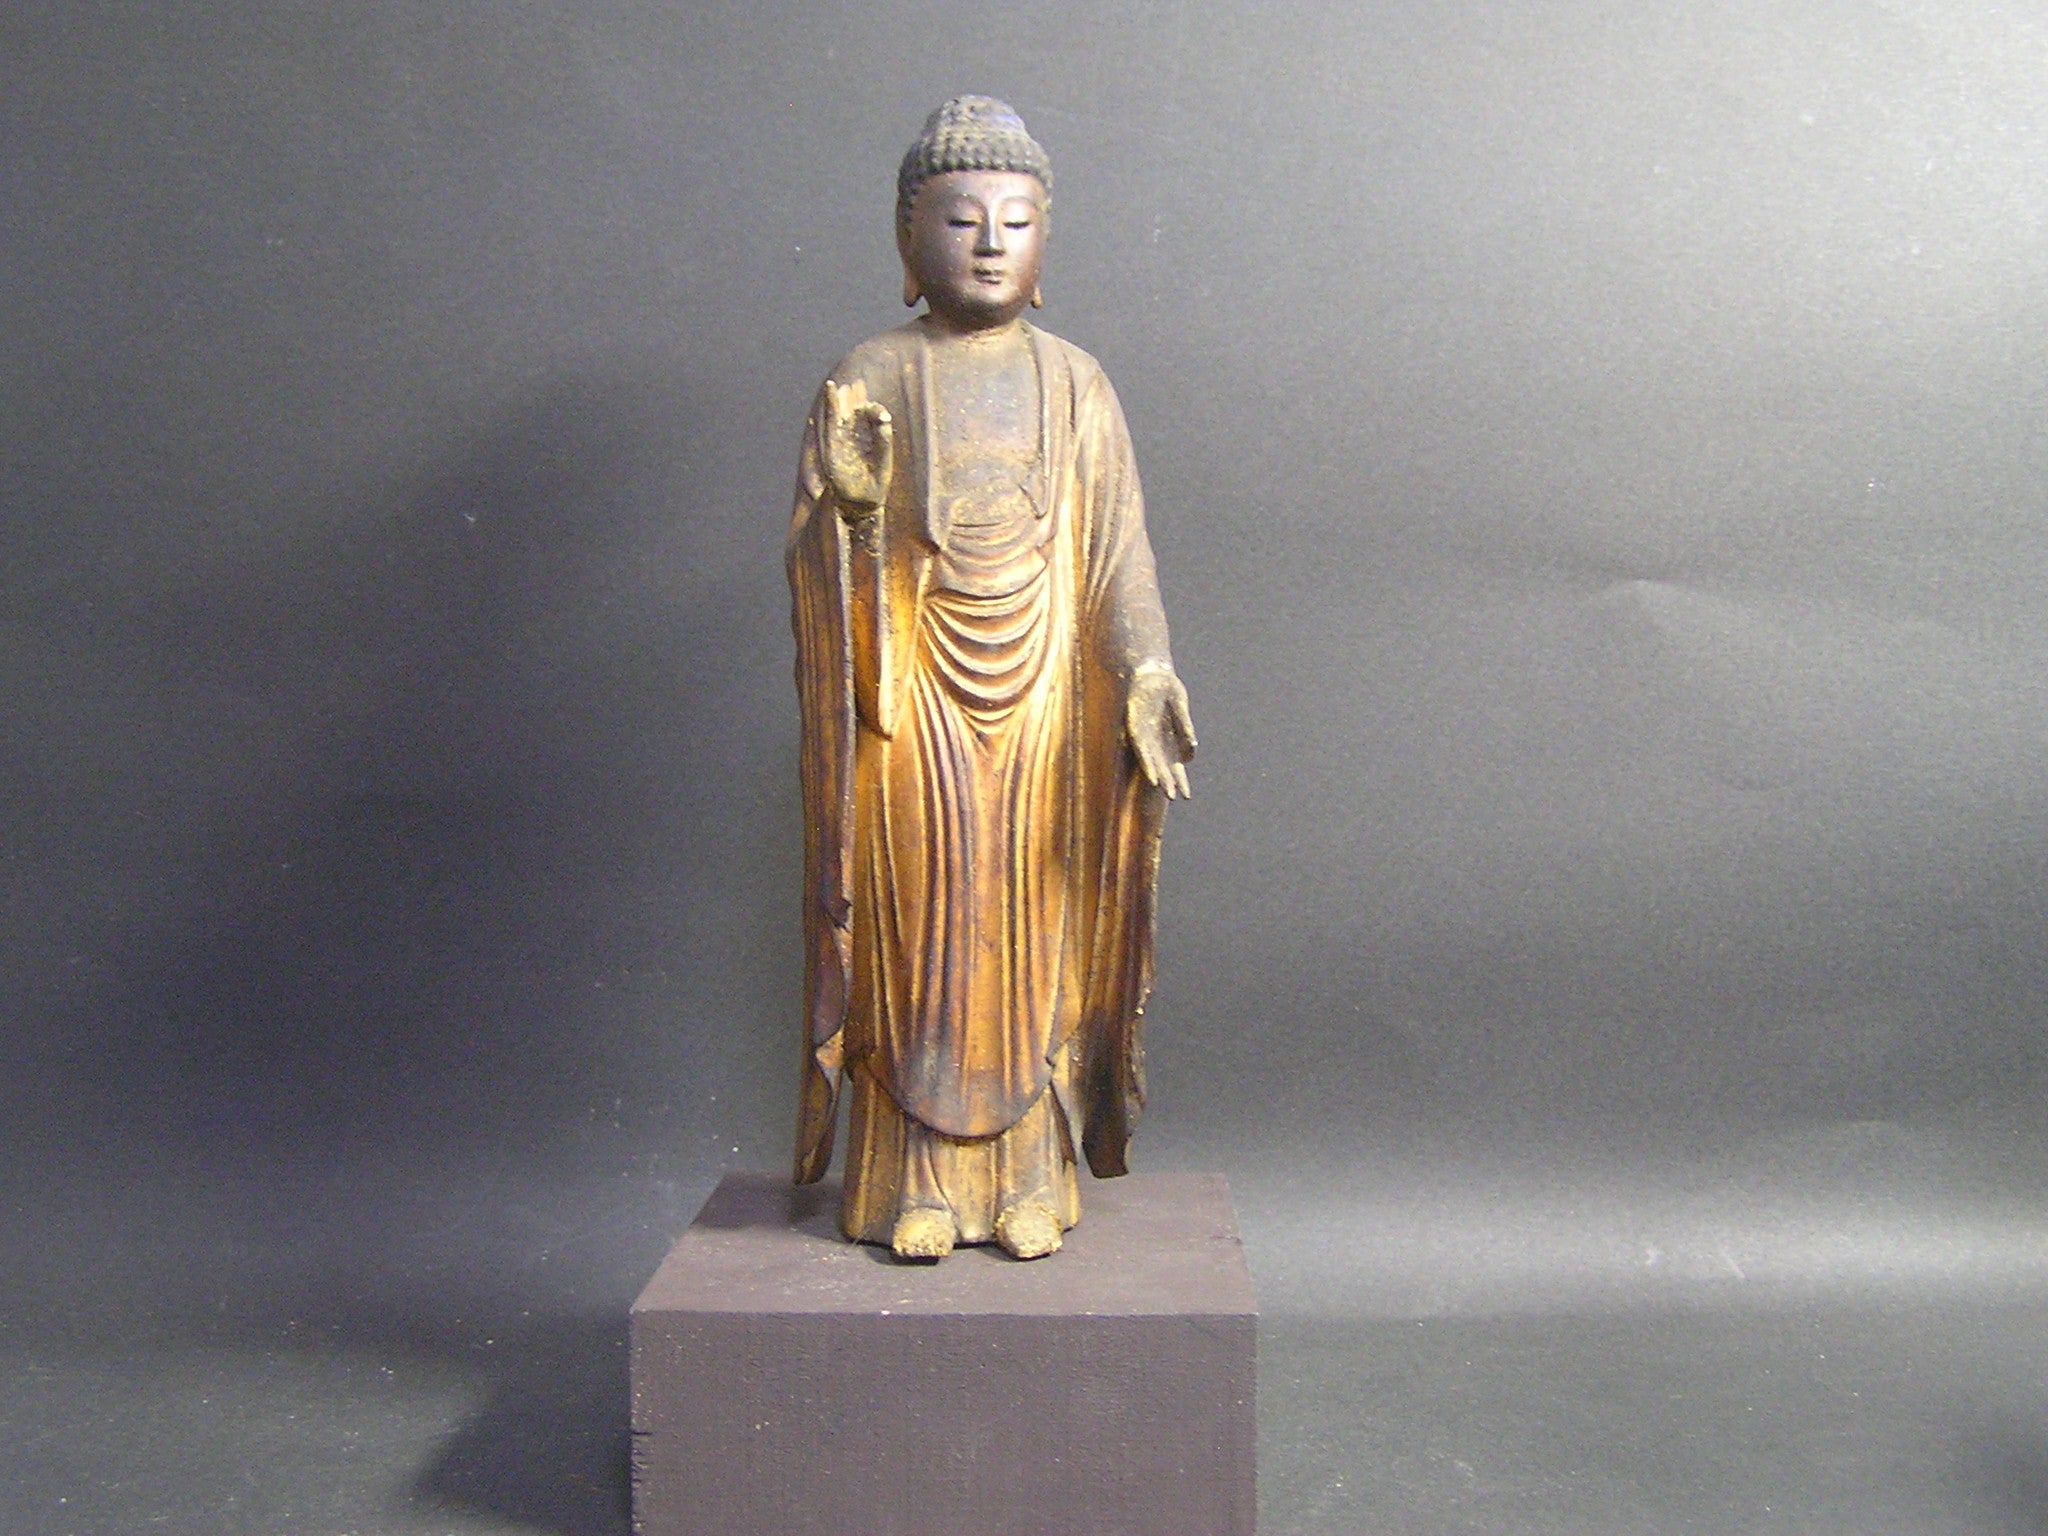 珍品家の仏像です。 | オリベストリートの骨董店 仏像を楽しむ